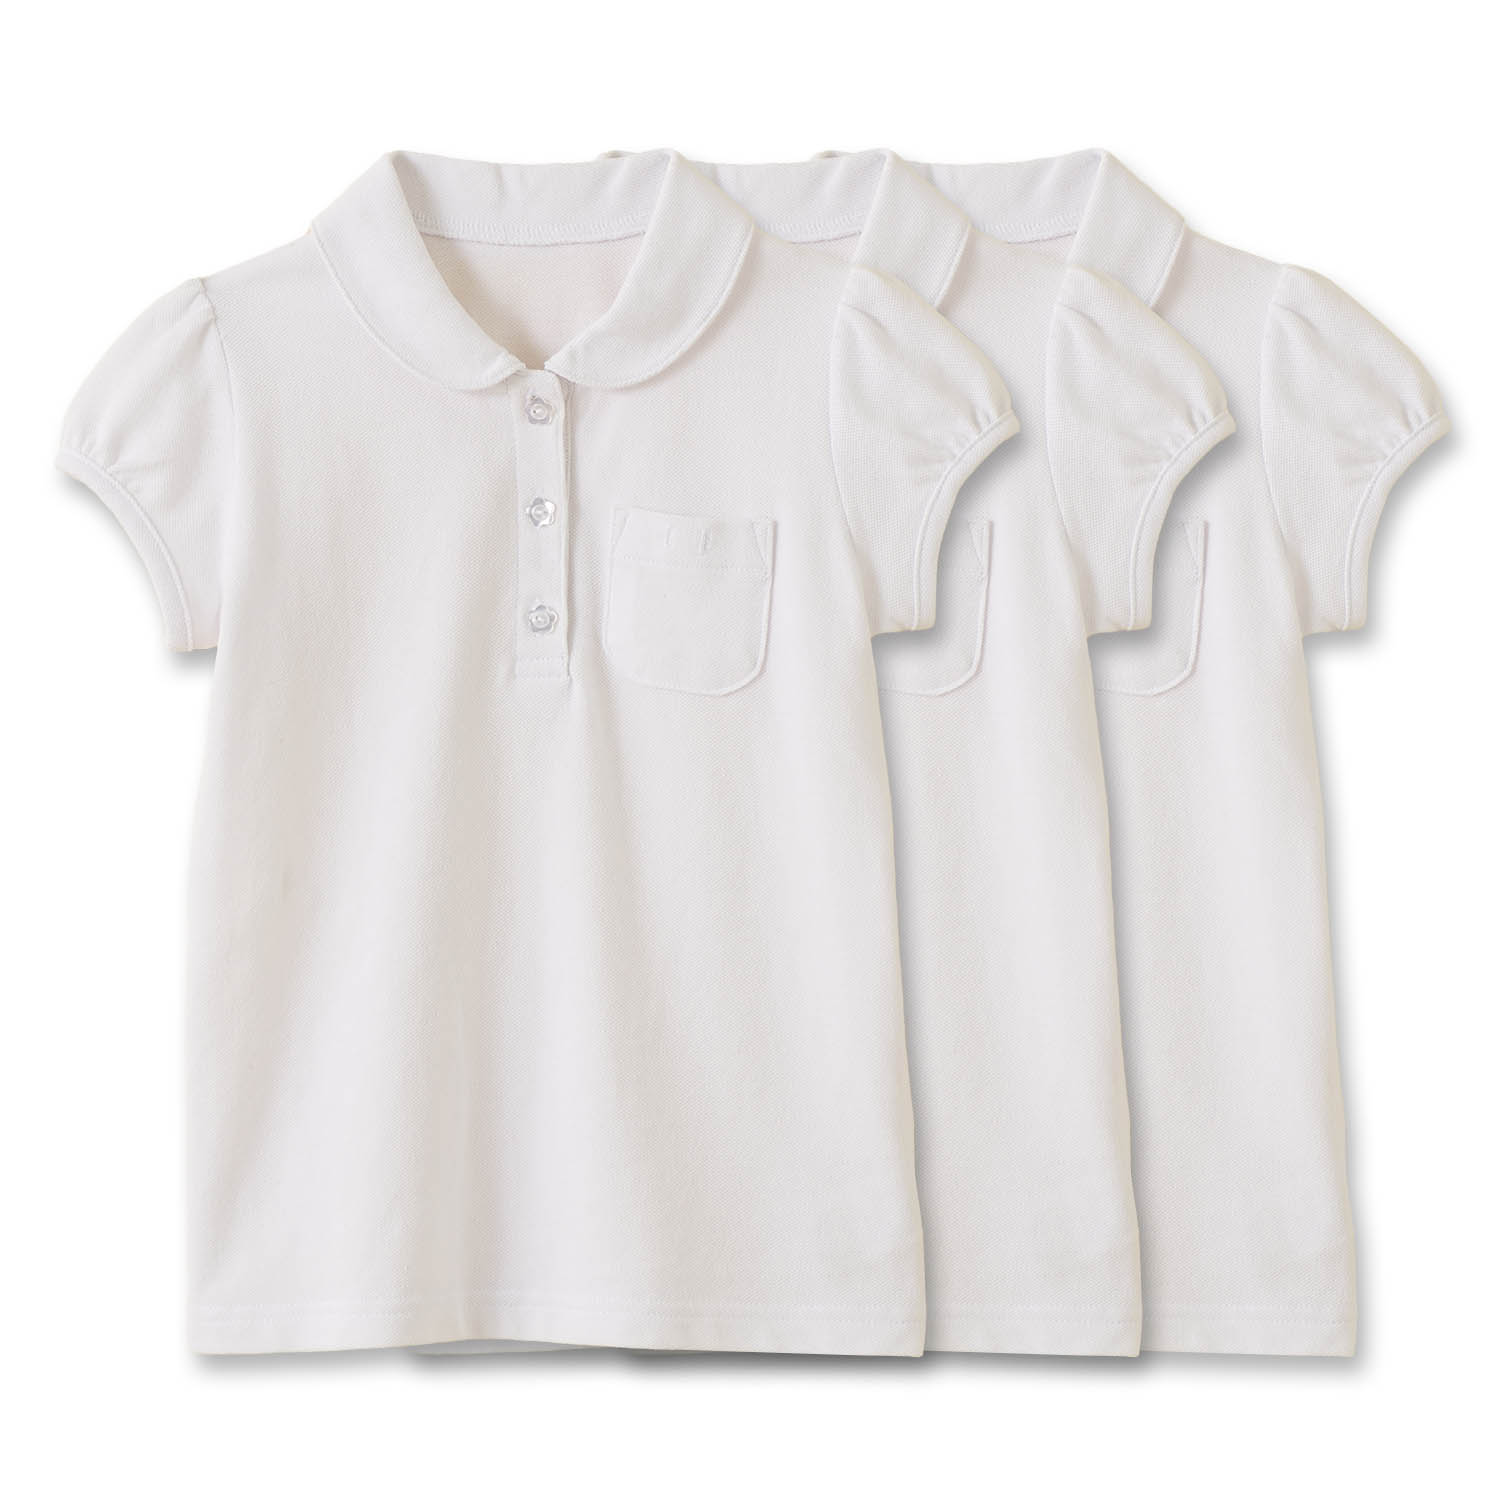 ポロシャツ スクールポロシャツ 半袖 3枚セット キッズ 女の子 子供 子ども服 ボタン 90 10...